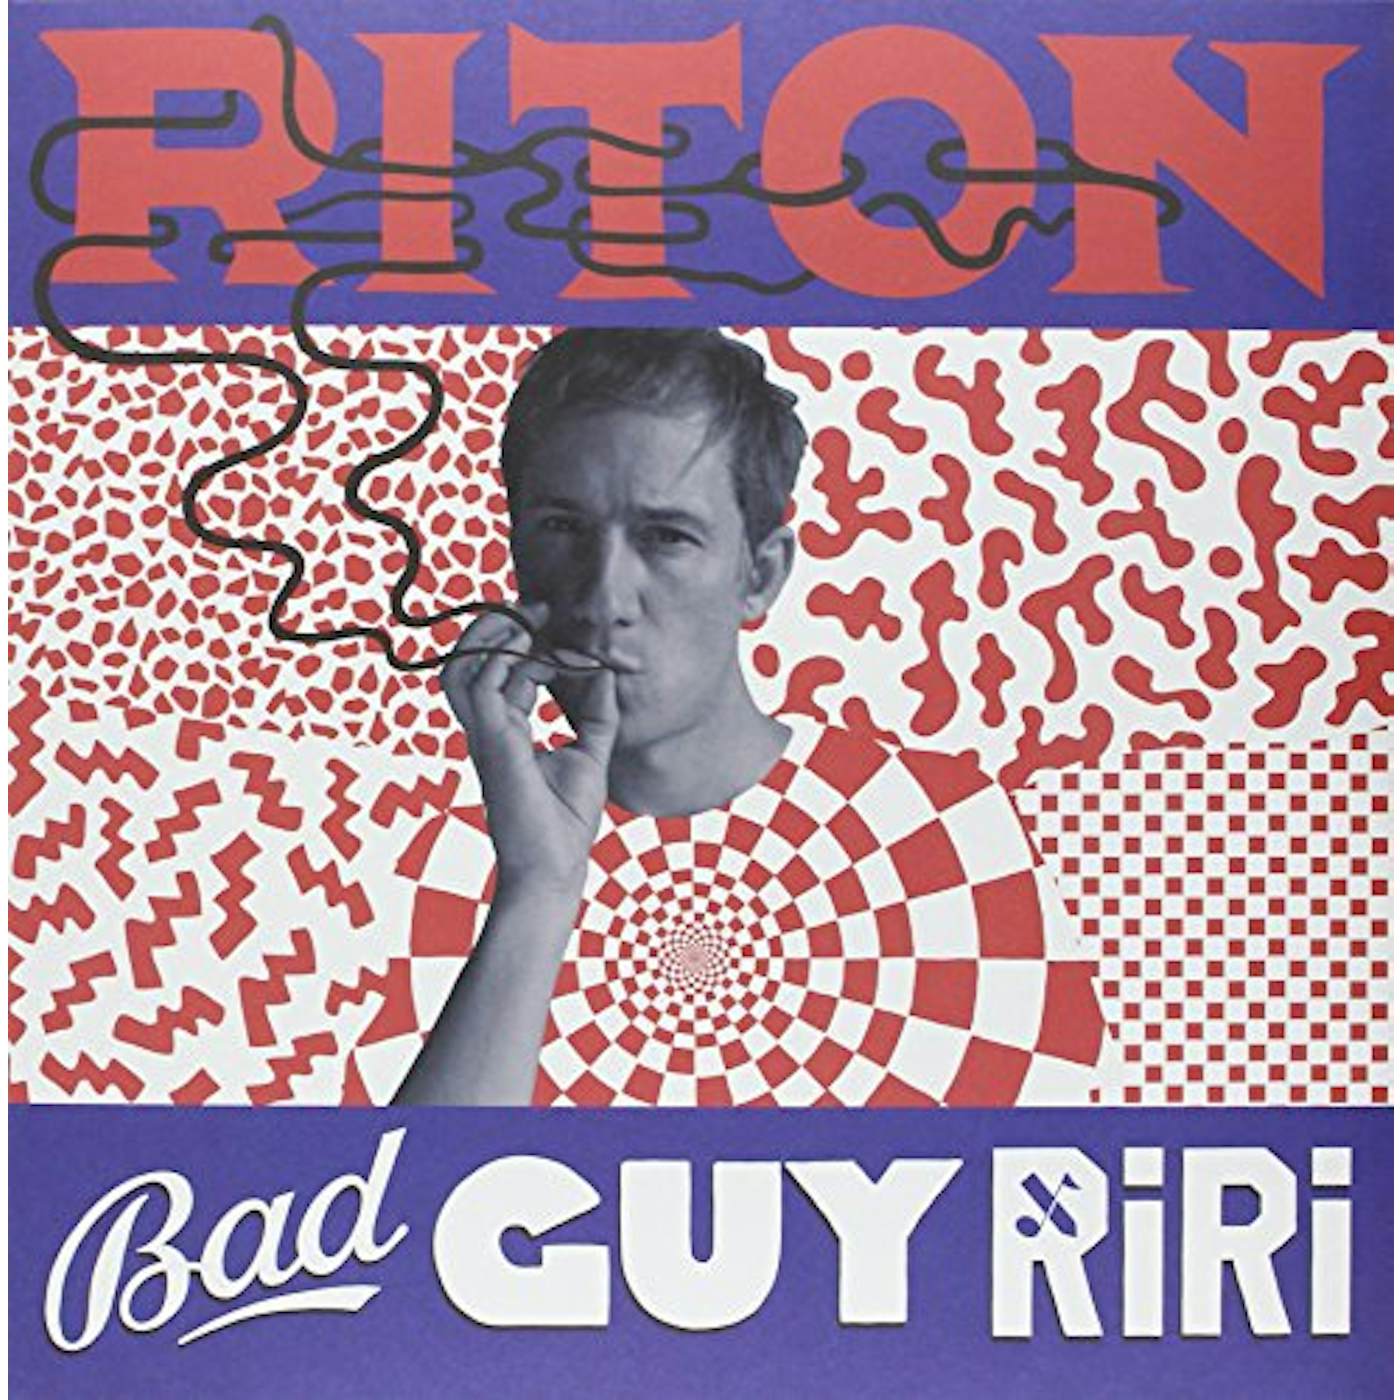 Riton Bad Guy Ri Ri Vinyl Record